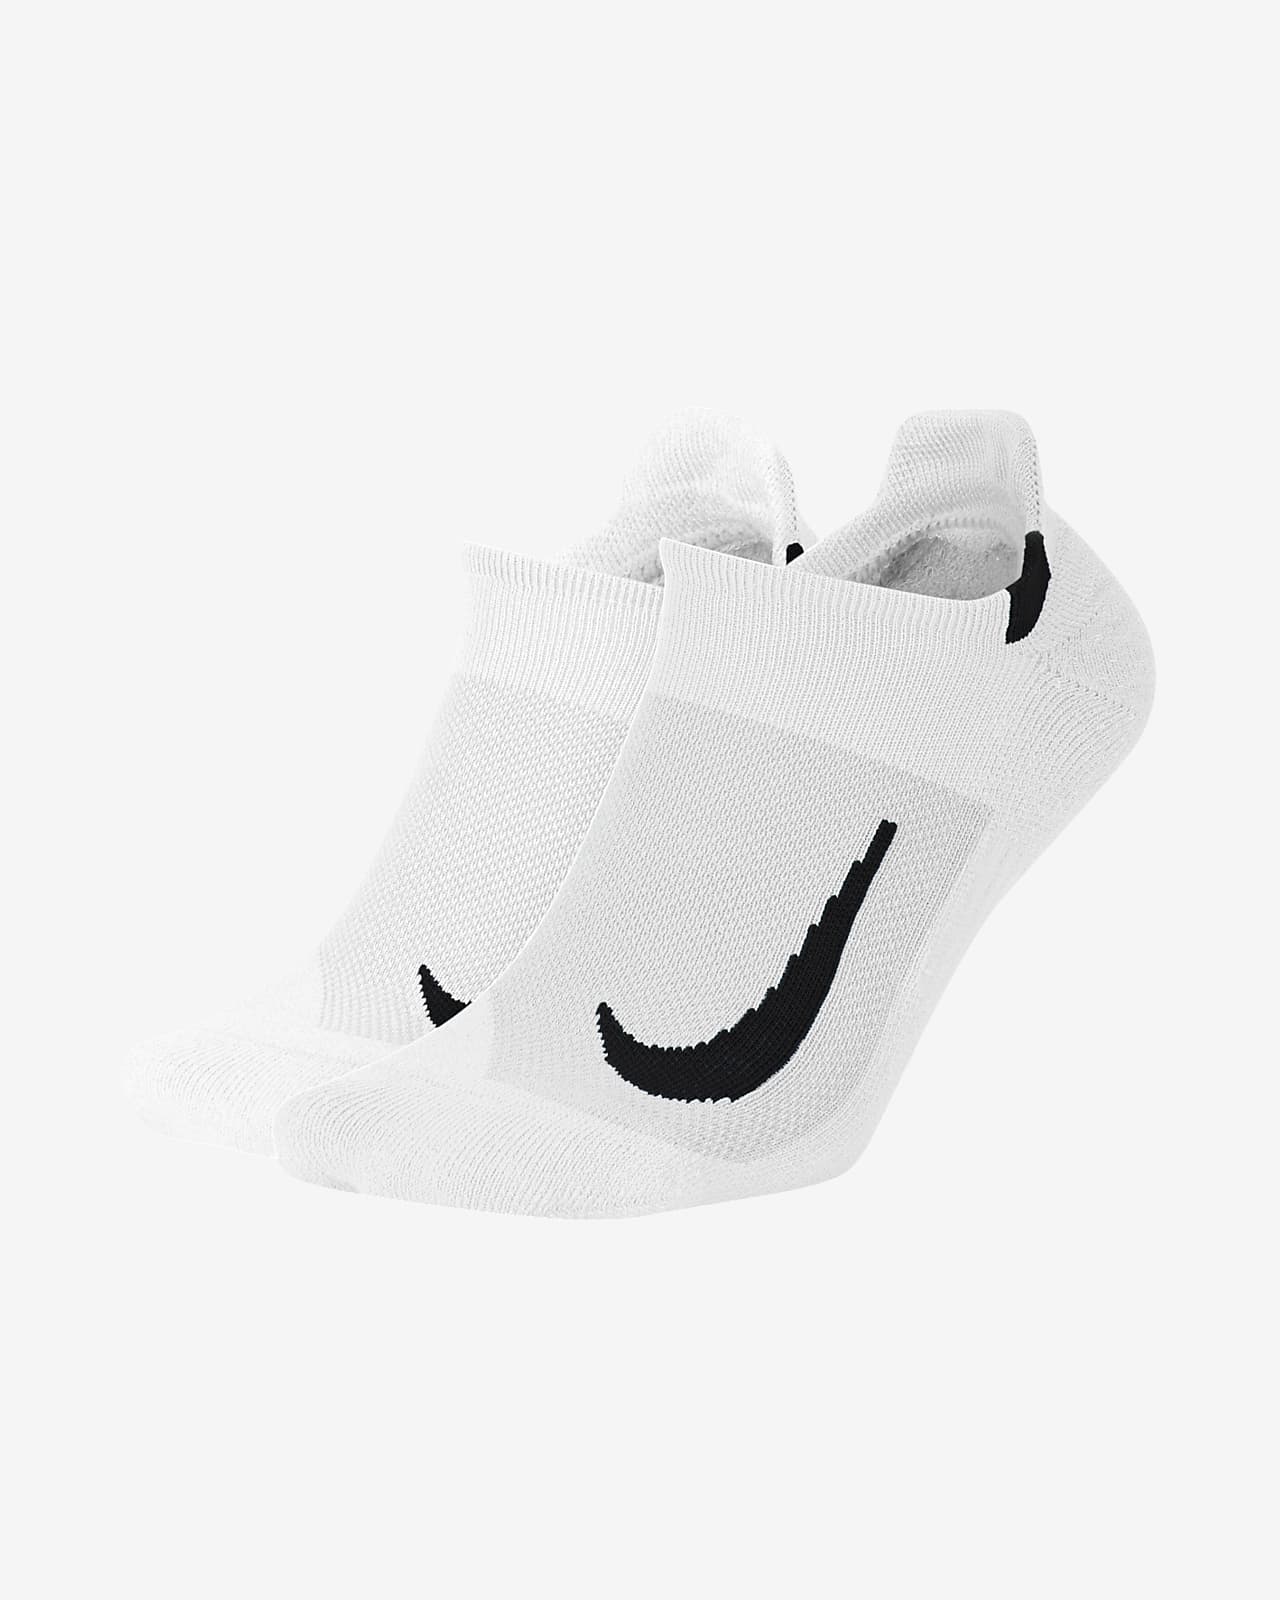 Nízké běžecké ponožky Nike Multiplier (2 páry)